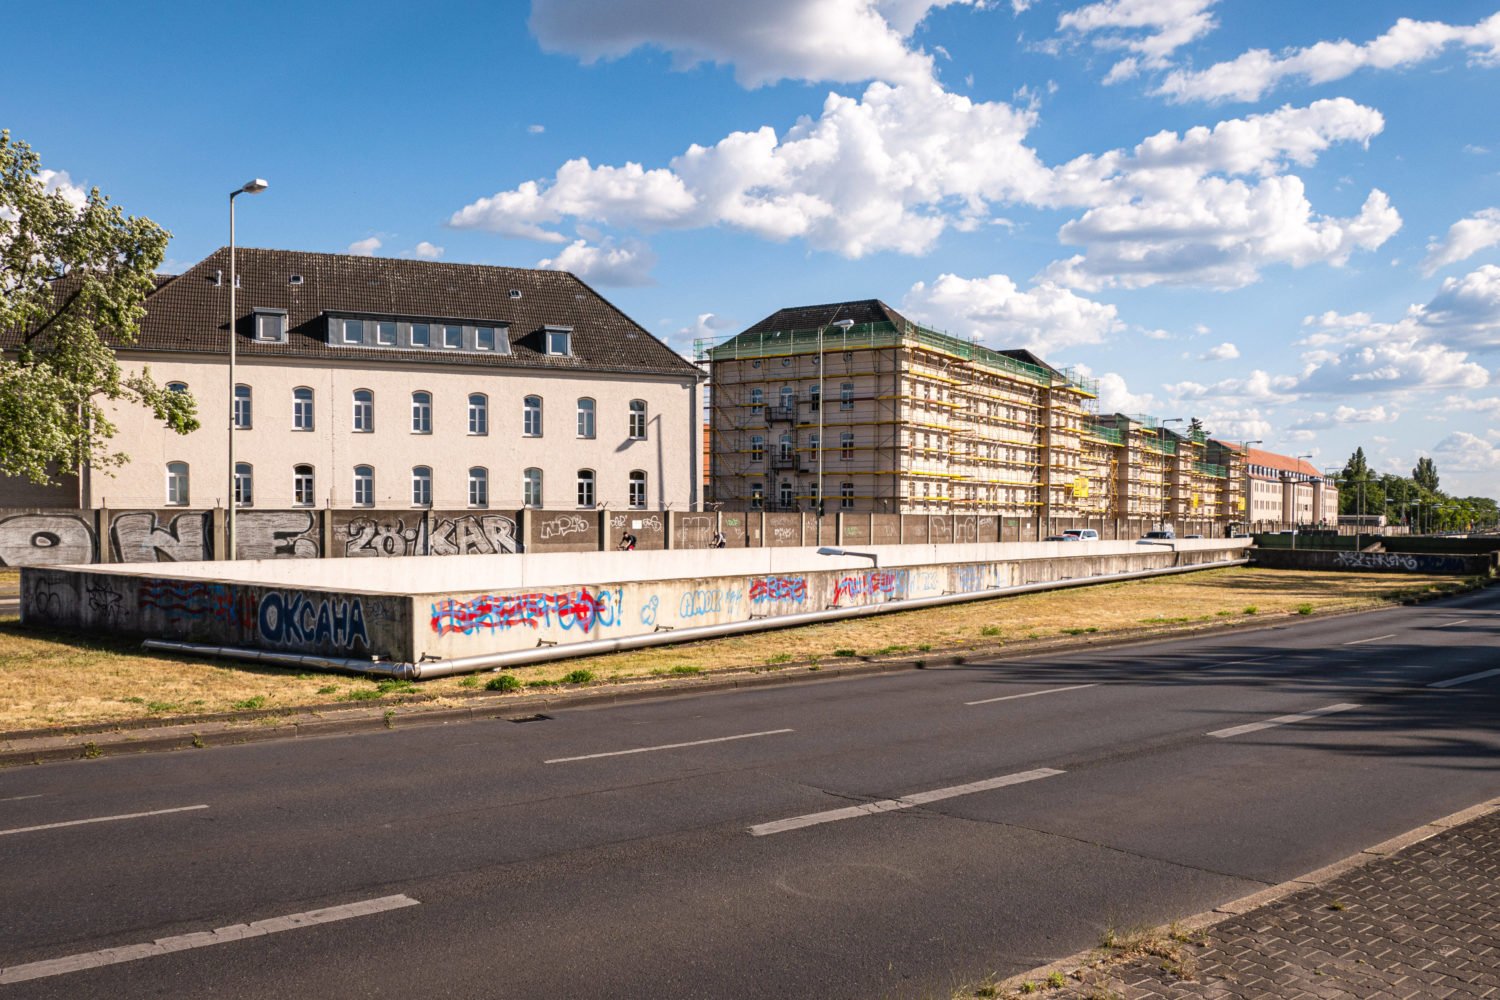 Nächster Halt: Aristide-Briand-Brücke. Die heutige Julius-Leber-Kaserne dort hieß früher "Quartier Napoléon" und war Frankreichs Hauptquartier in Berlin. Foto: Imago Images/Zeitz